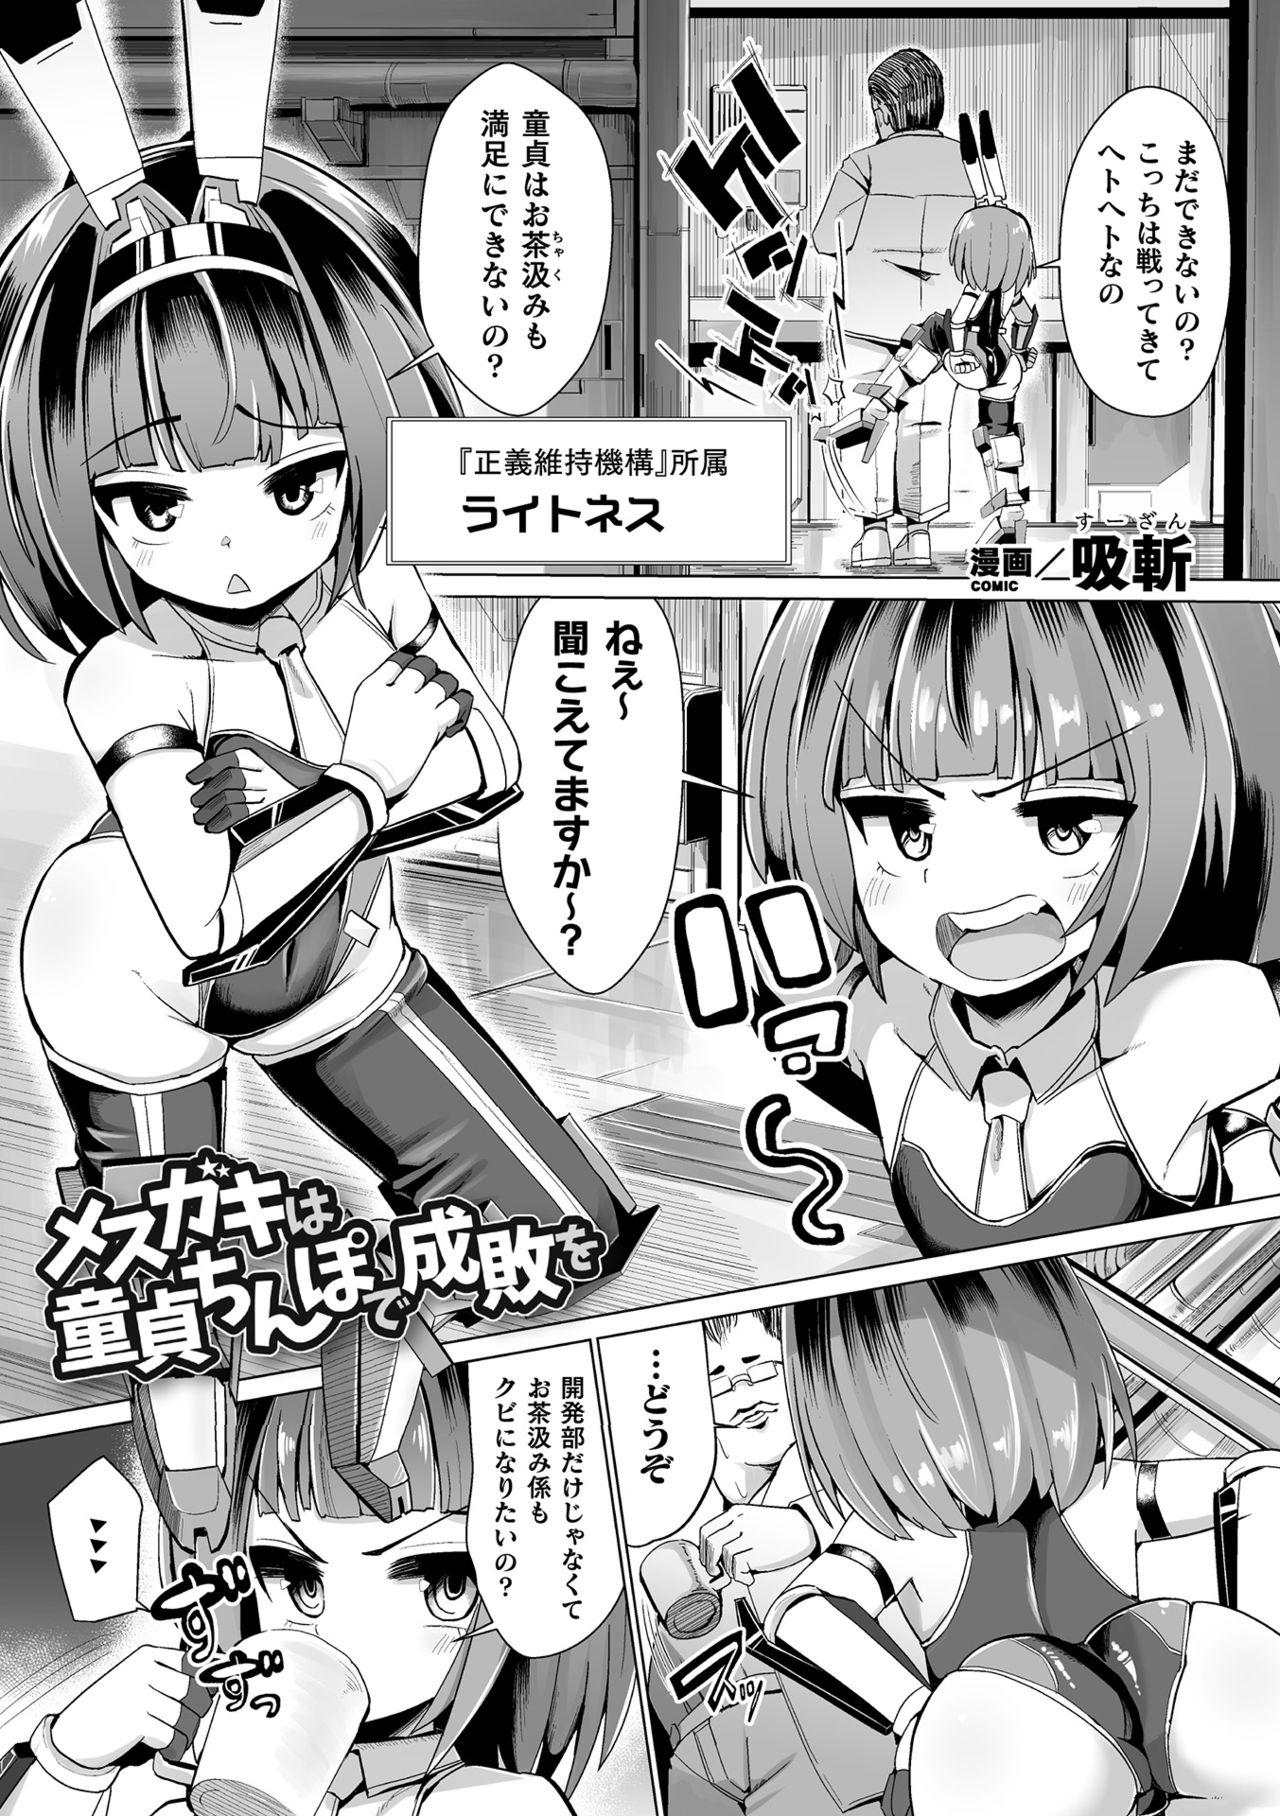 2D Comic Magazine Mesugaki Henshin Heroine Seisai Wakarase-bou ni wa Katemasen deshita! Vol. 2 2